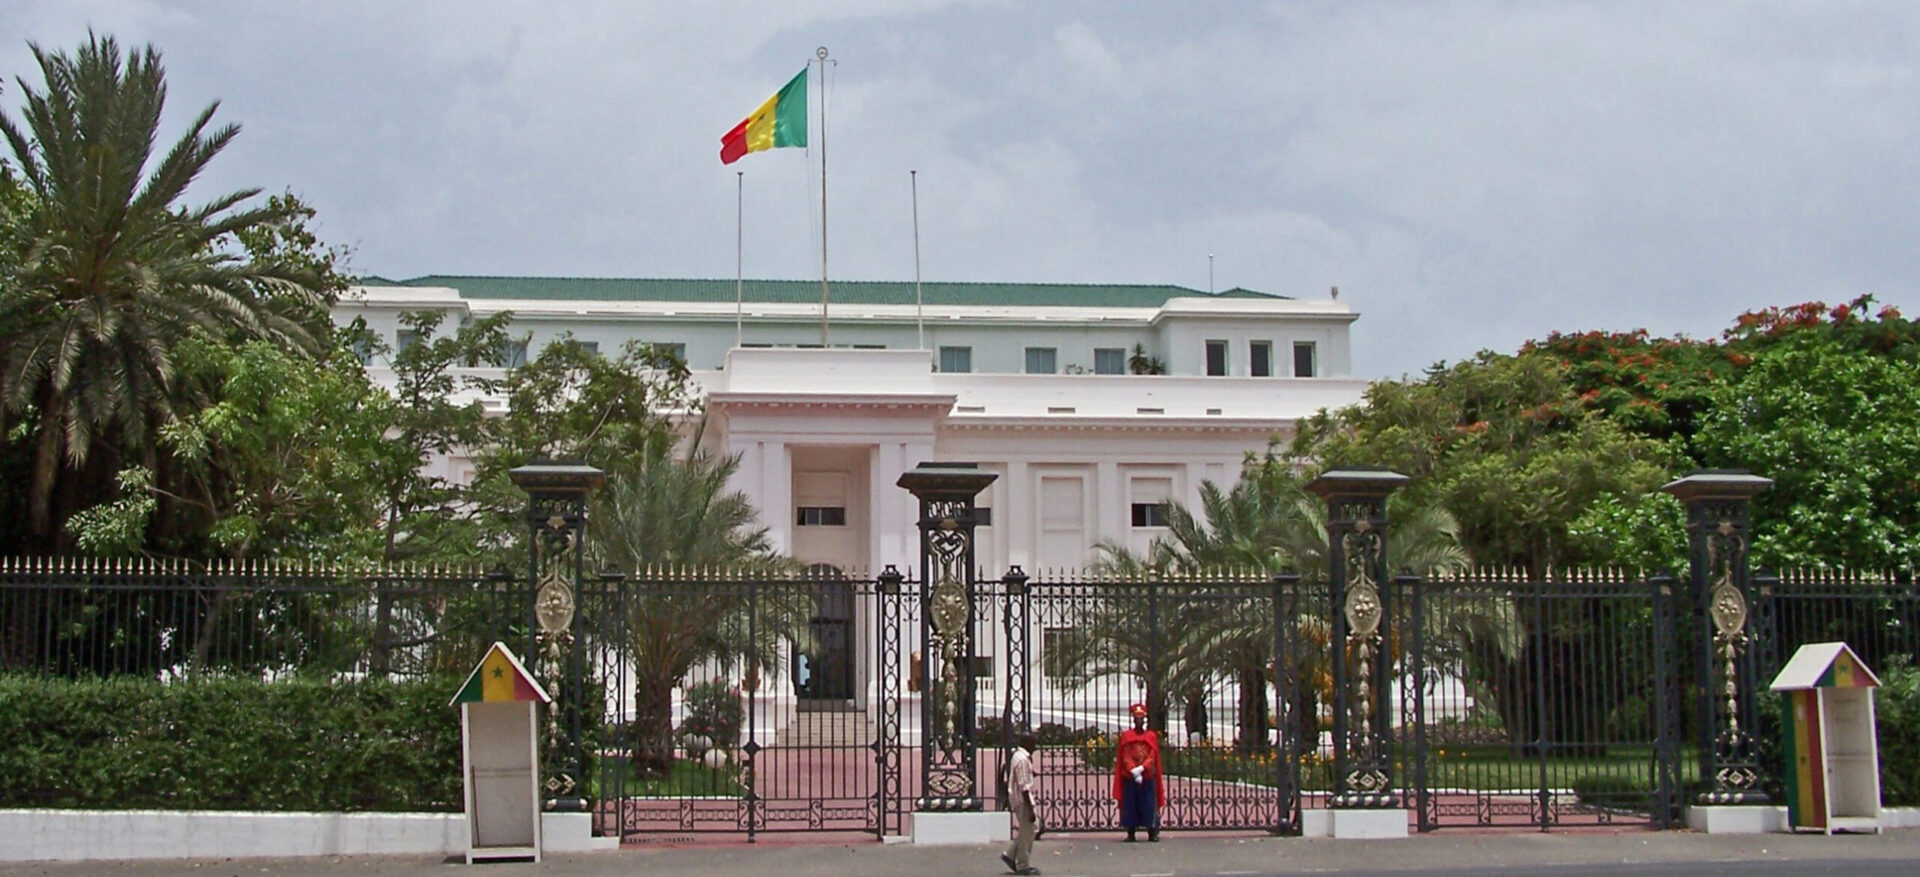 Le palais présidentiel de Dakar abritera-t-il prochainement une mosquée? | © Bess Sadler/Wikimedia Commons/CC BY-SA 2.0